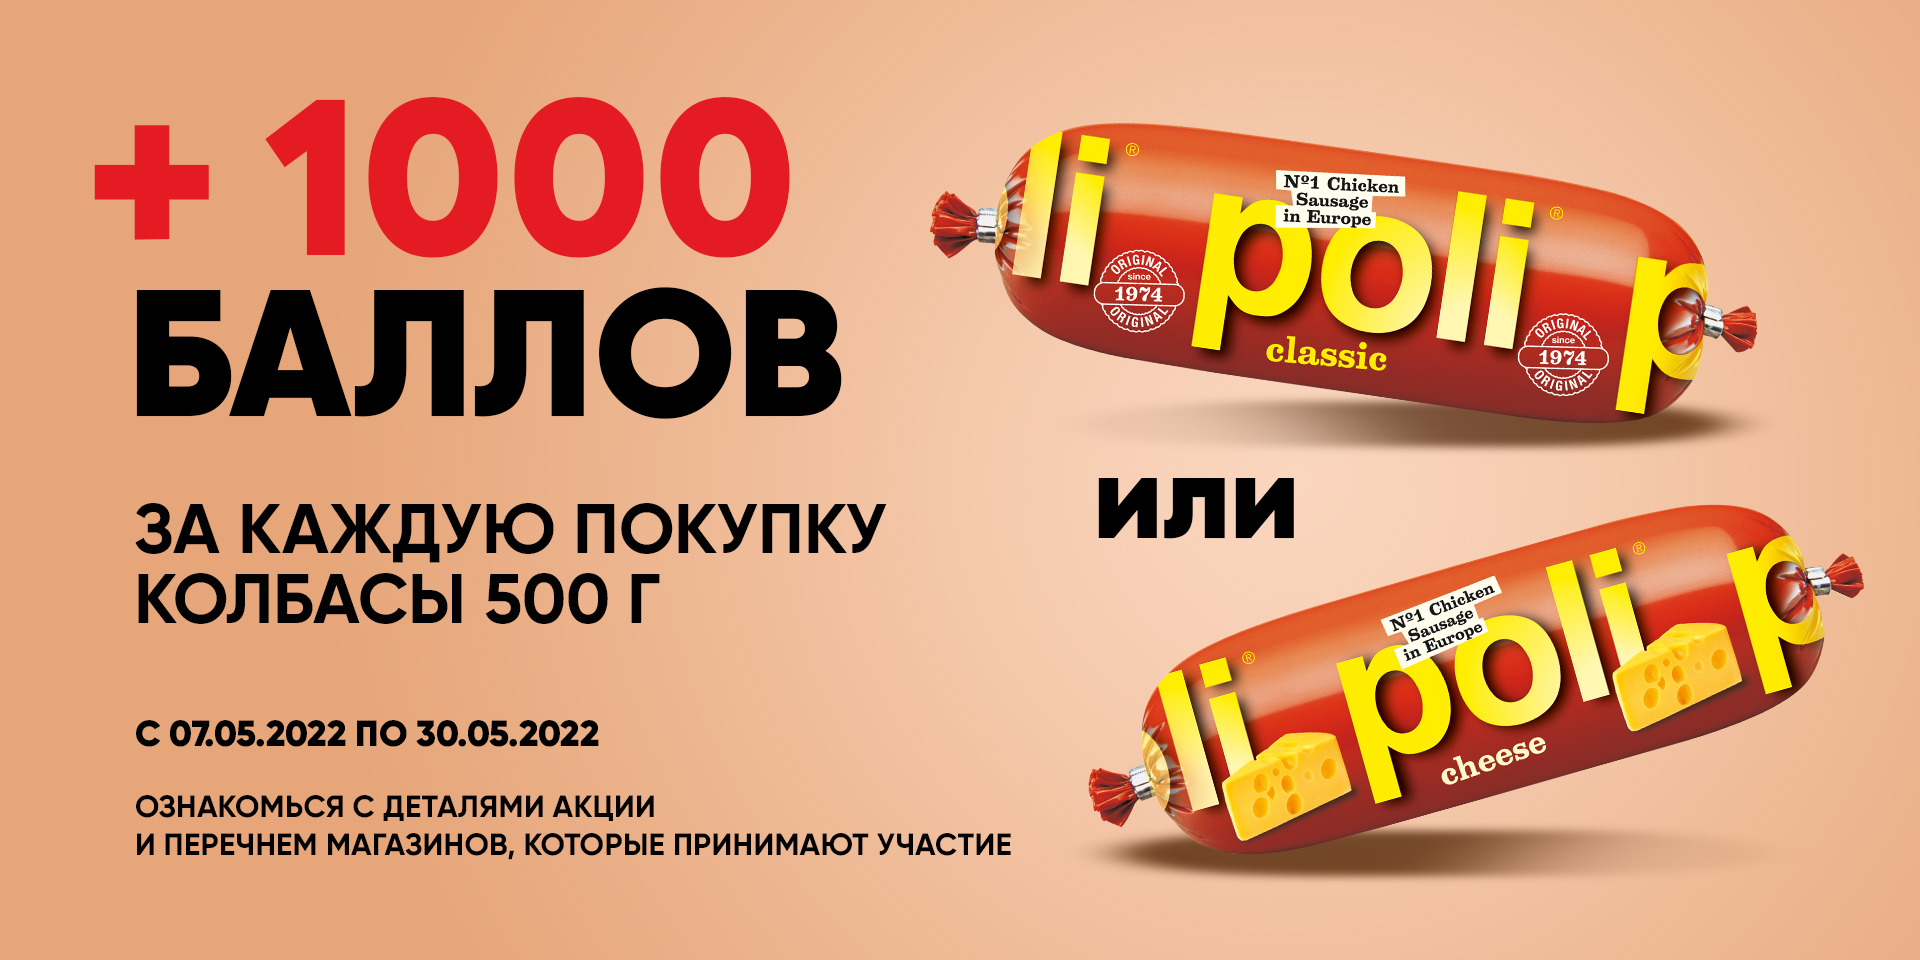 + 1000 баллов за каждую покупку Колбасы ТМ "Poli"